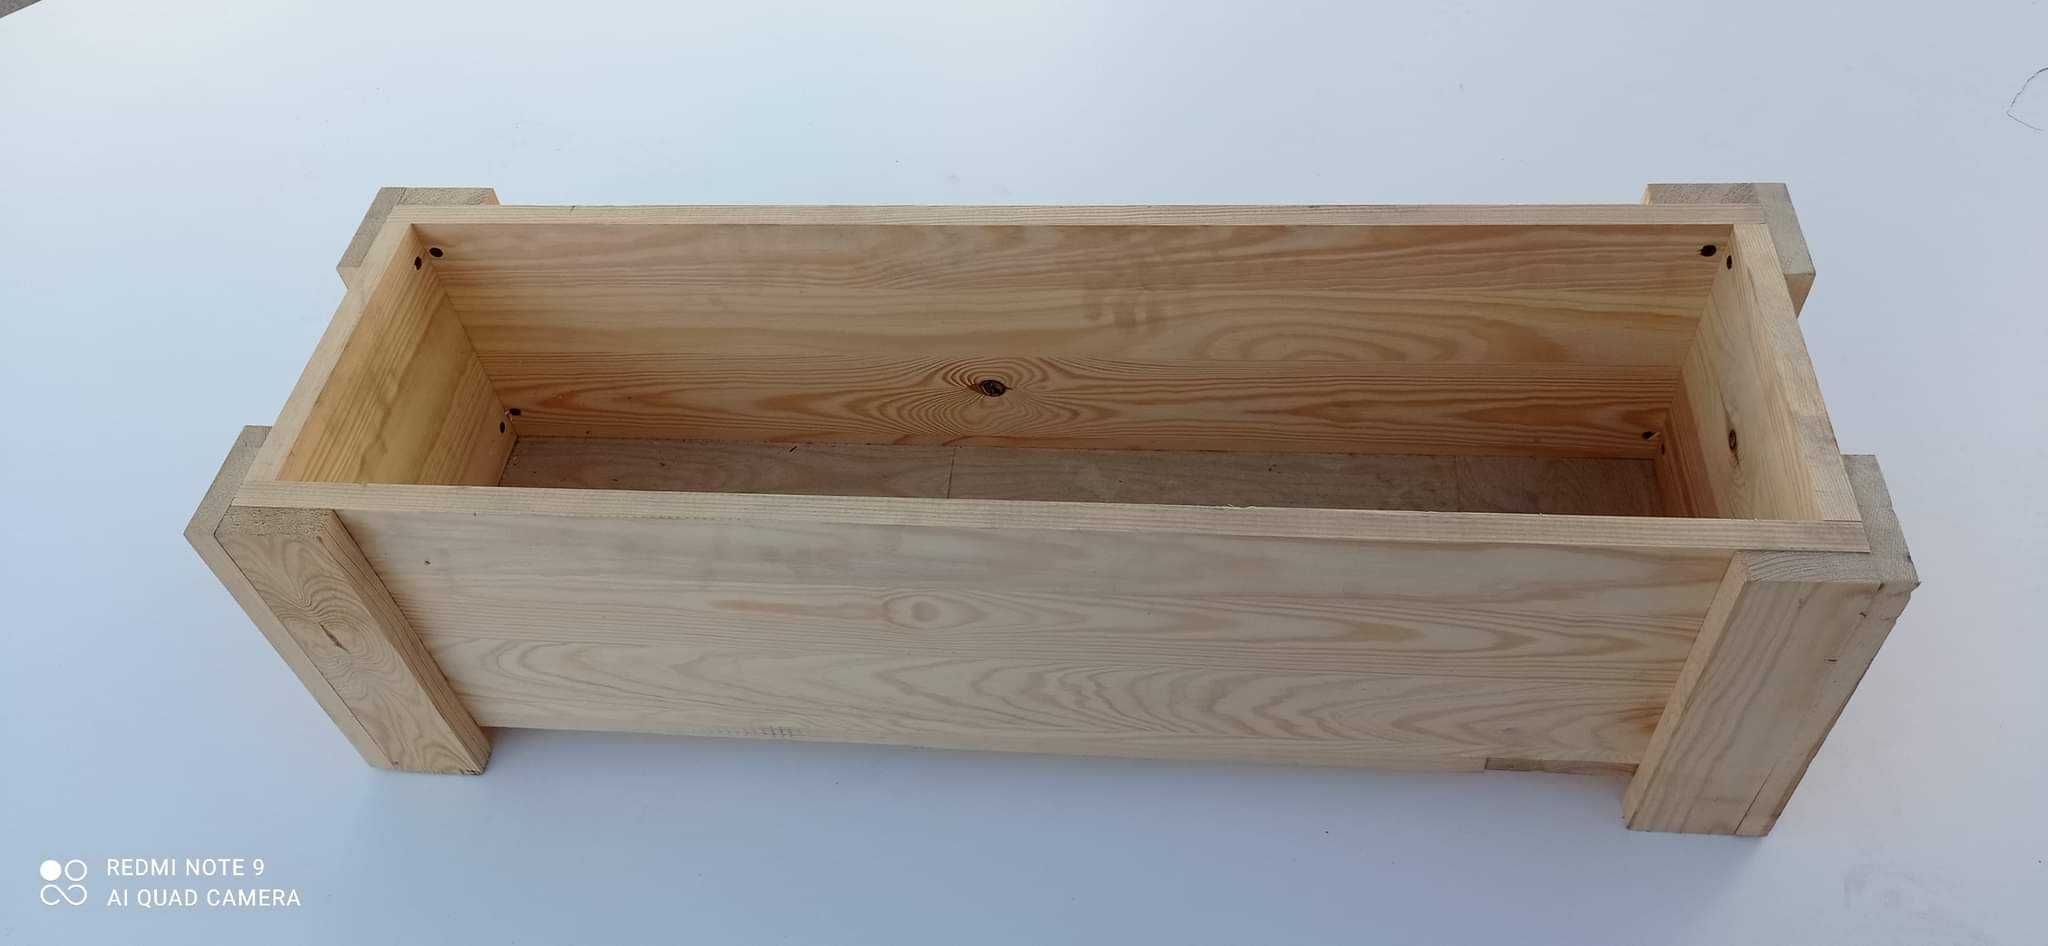 Doniczka /  skrzynka drewniana